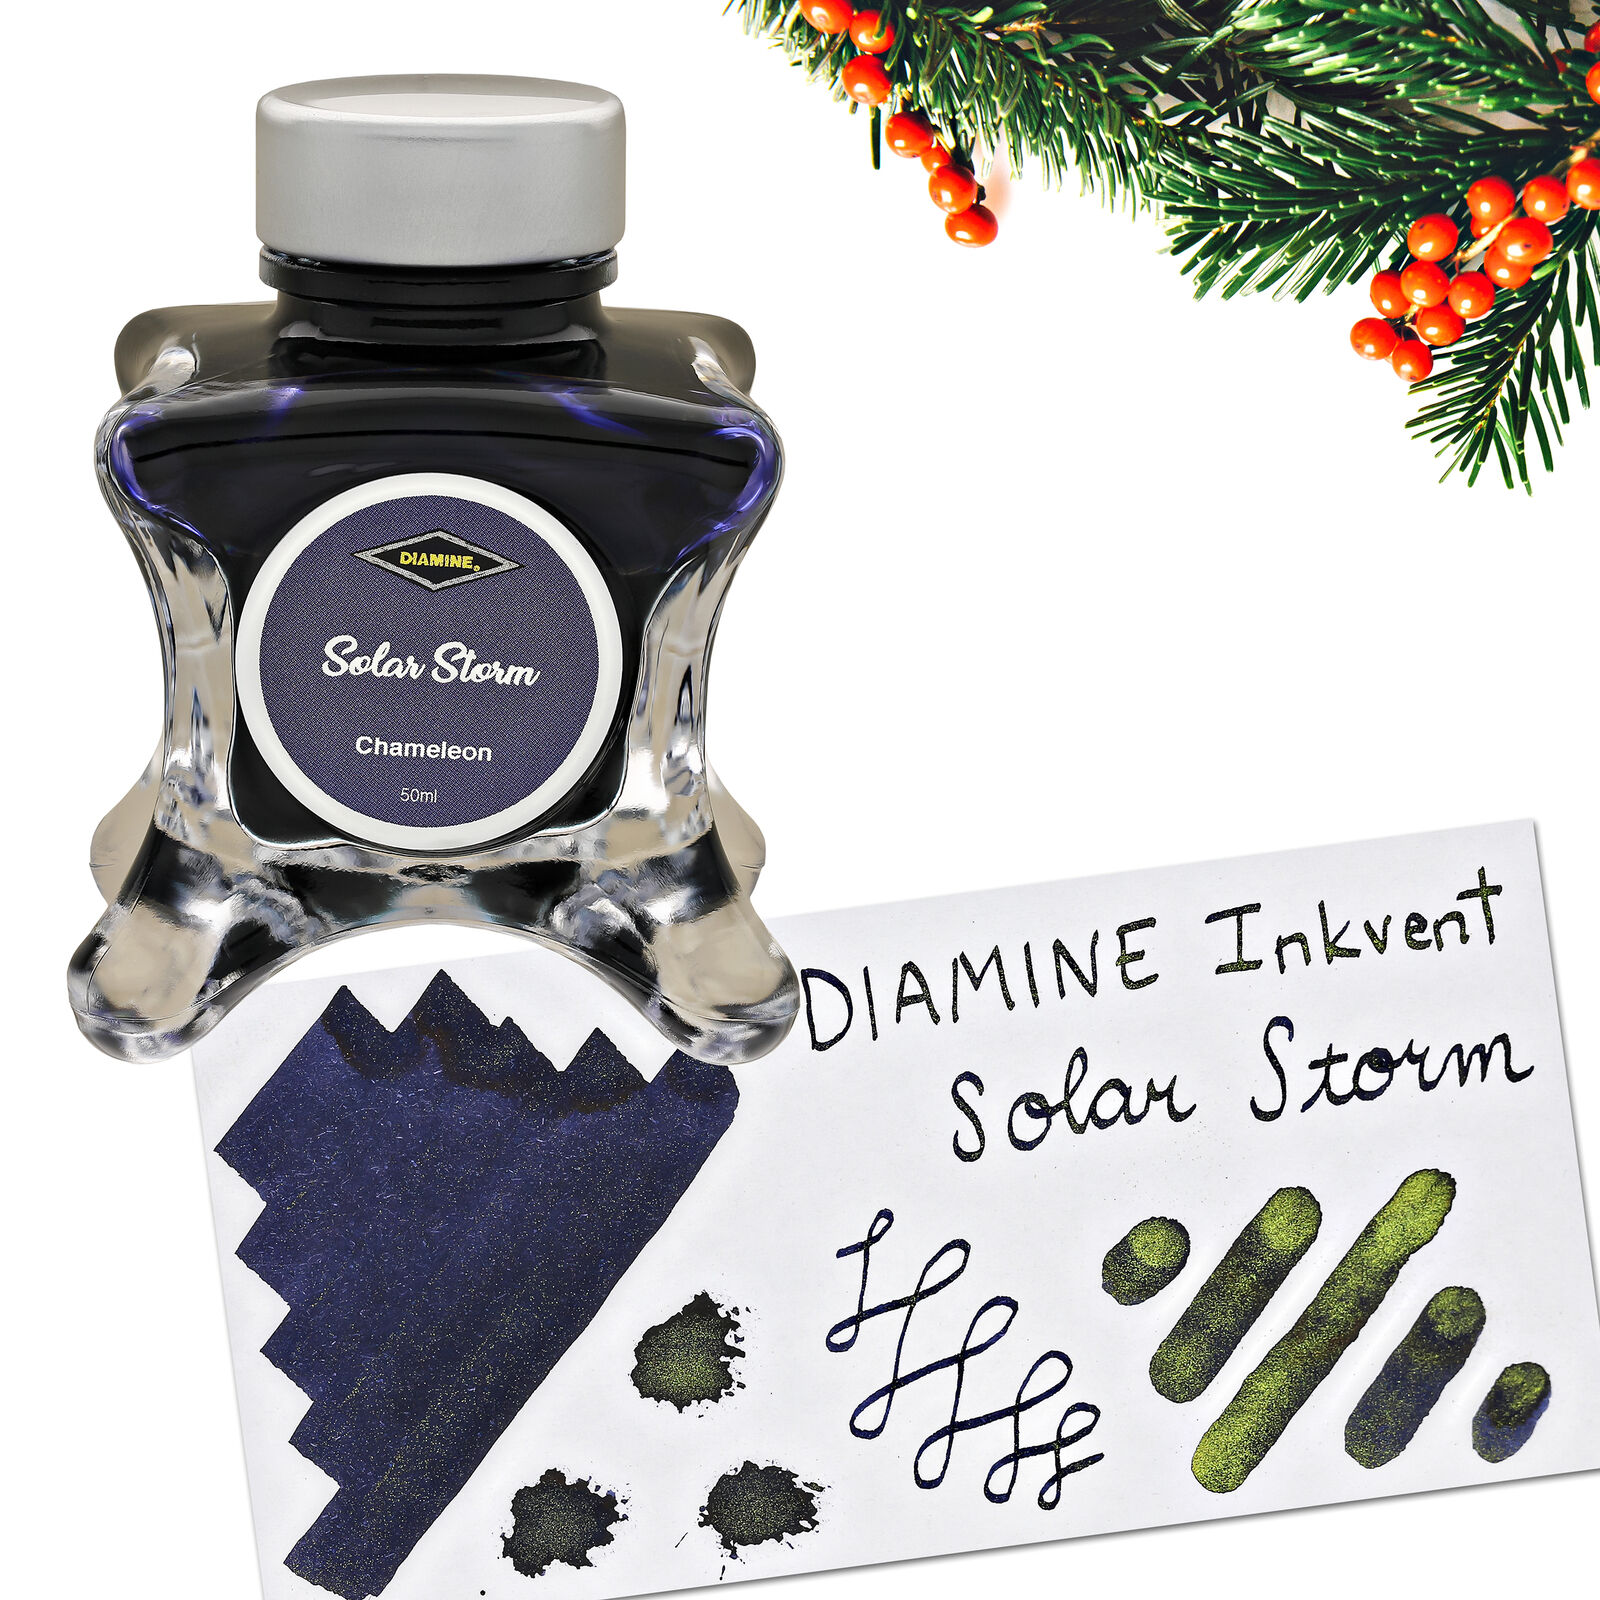 Diamine Inkvent Green Edition Chameleon Bottled Ink in Solar Storm - 50 mL NEW